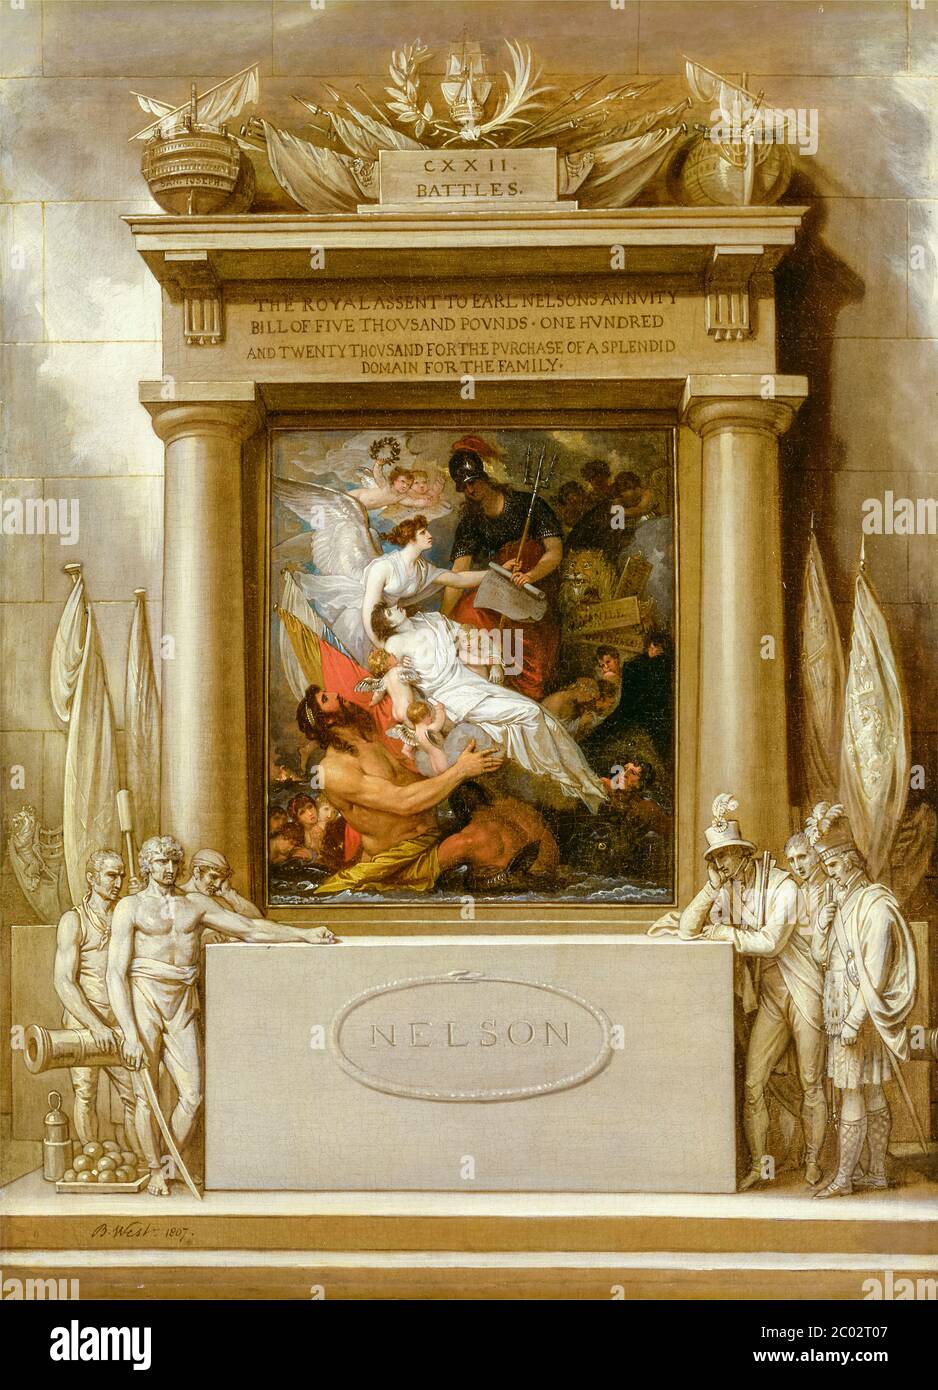 Projet pour un monument : l'apothéose de Nelson, peinture de Benjamin West, 1807 Banque D'Images